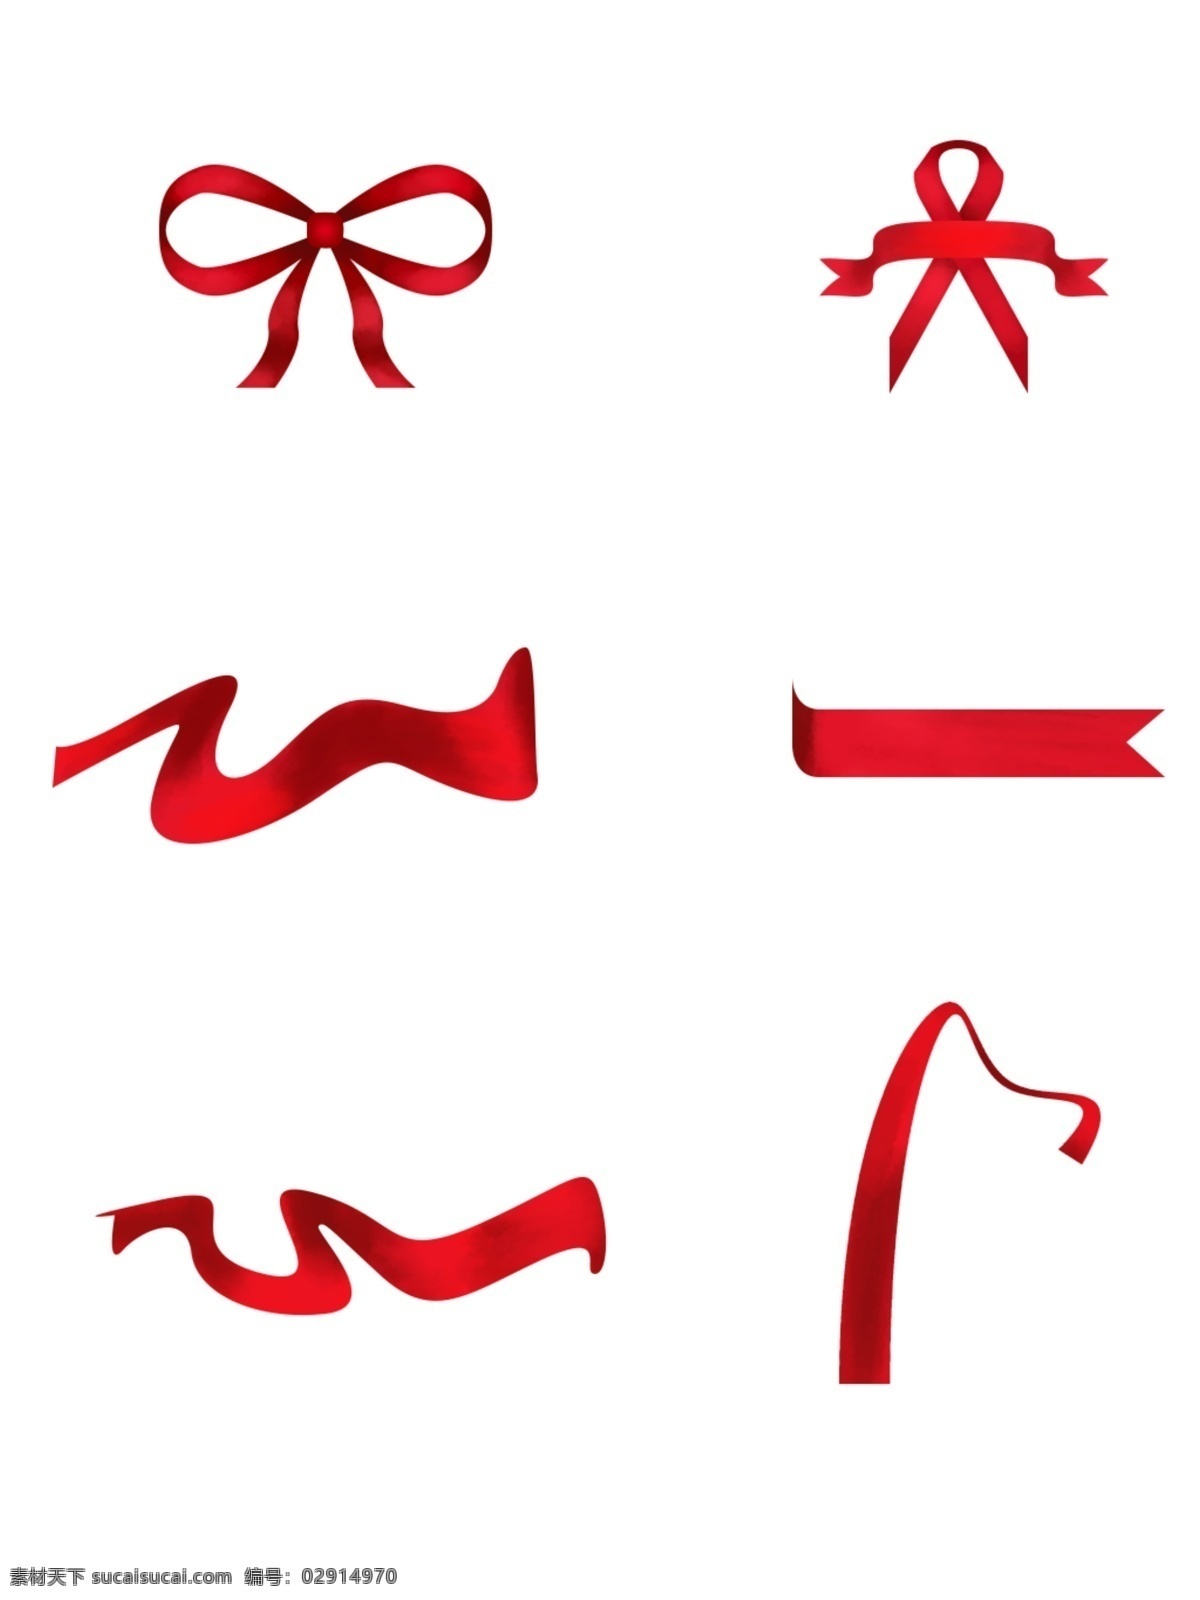 ps 矢量 红丝 带 元素 蝴蝶结 商用 红丝带 丝带 ps矢量 可商用素材 红绸 装饰元素 红绳 包装绳